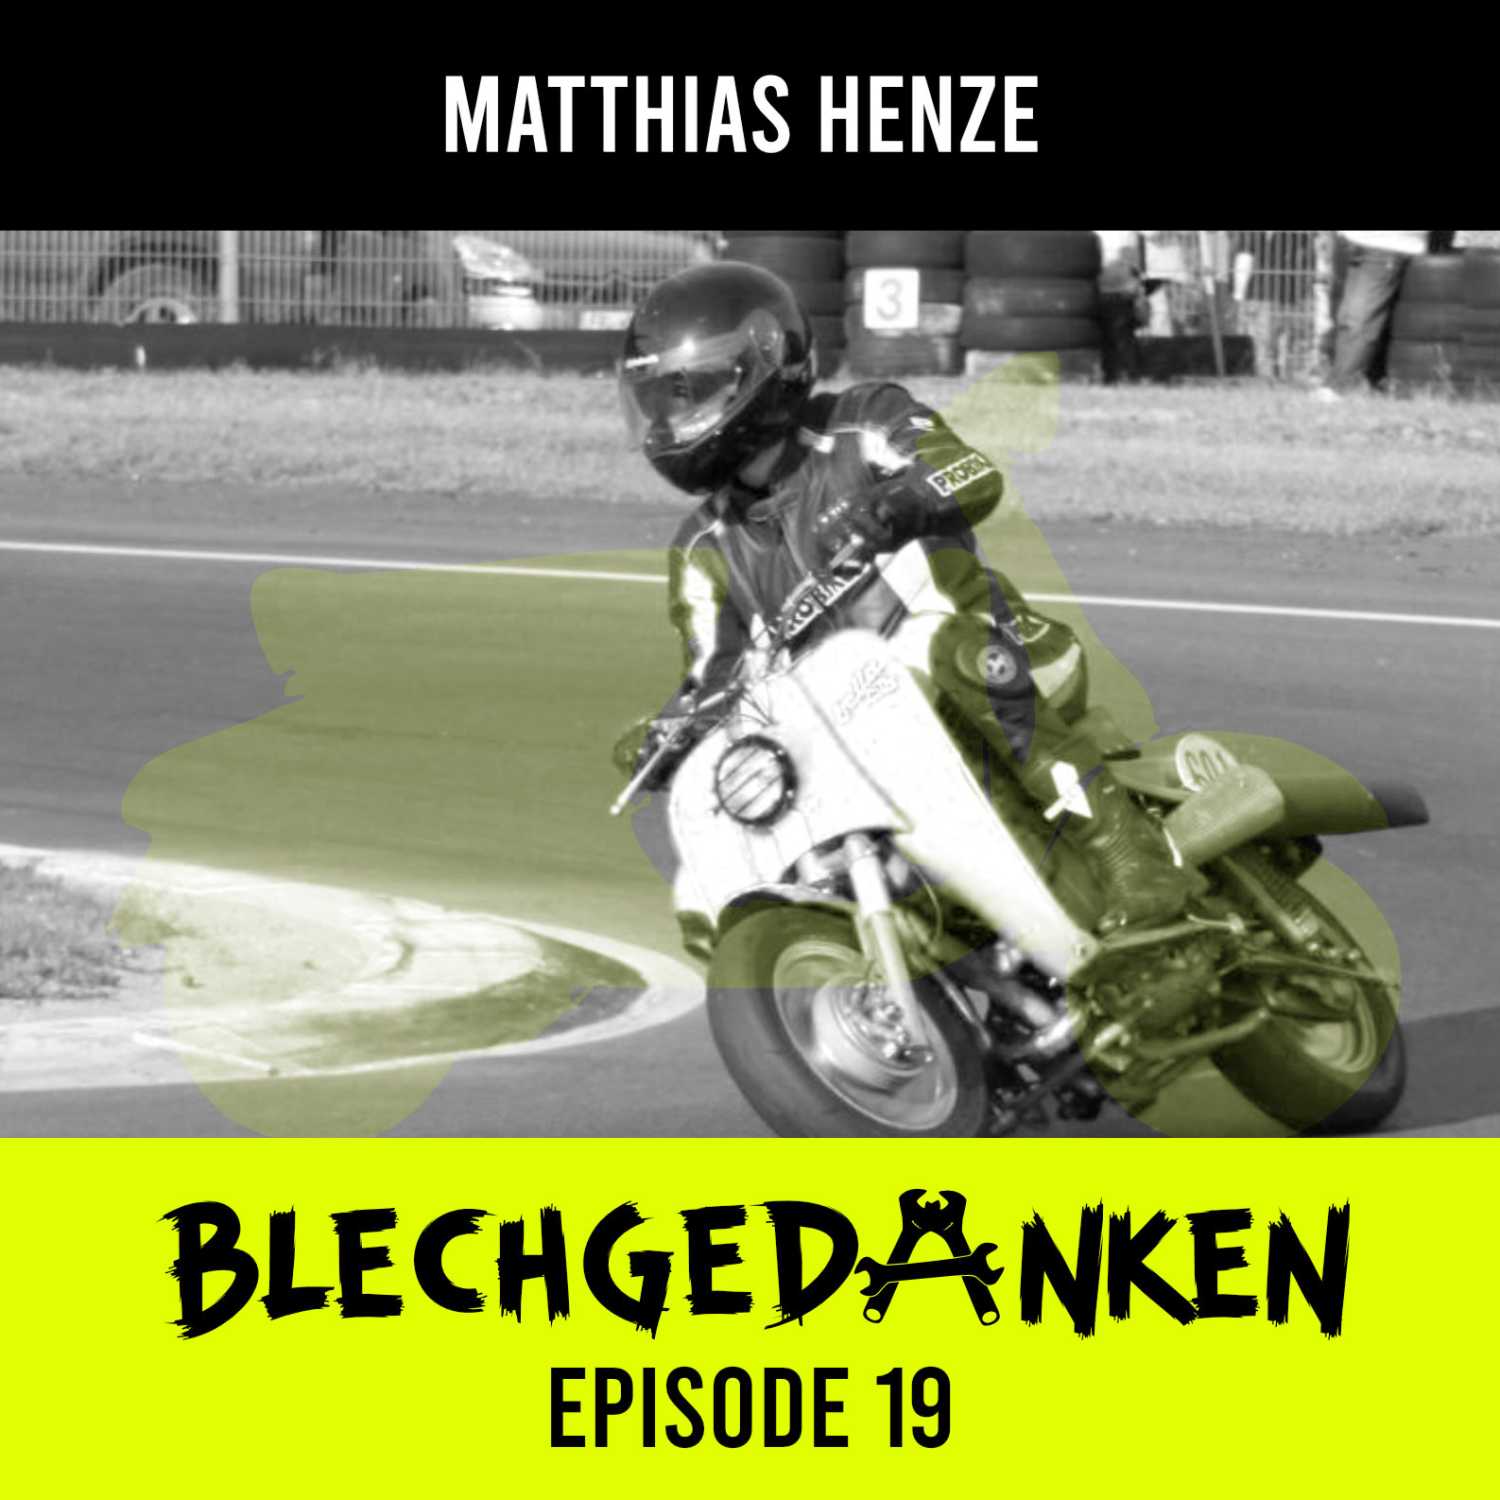 Blechgedanken Episode 19 - Matthias Henze - Seit mehr als 40 Jahren den Altrollern verfallen...